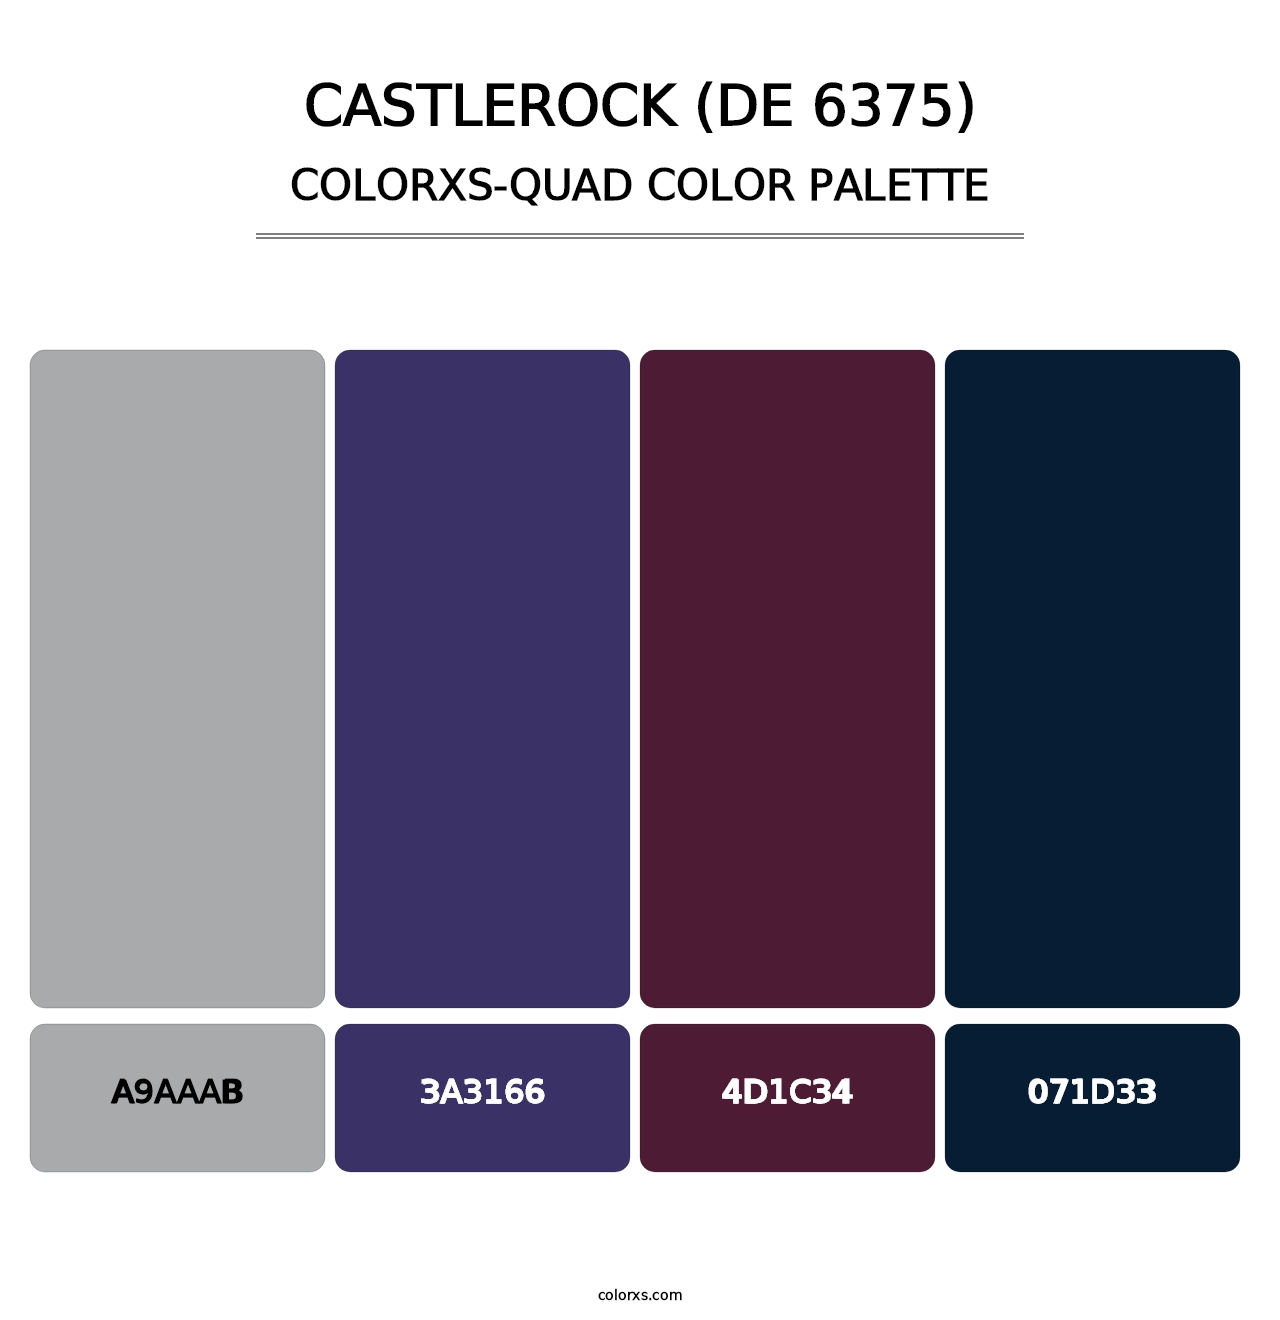 Castlerock (DE 6375) - Colorxs Quad Palette